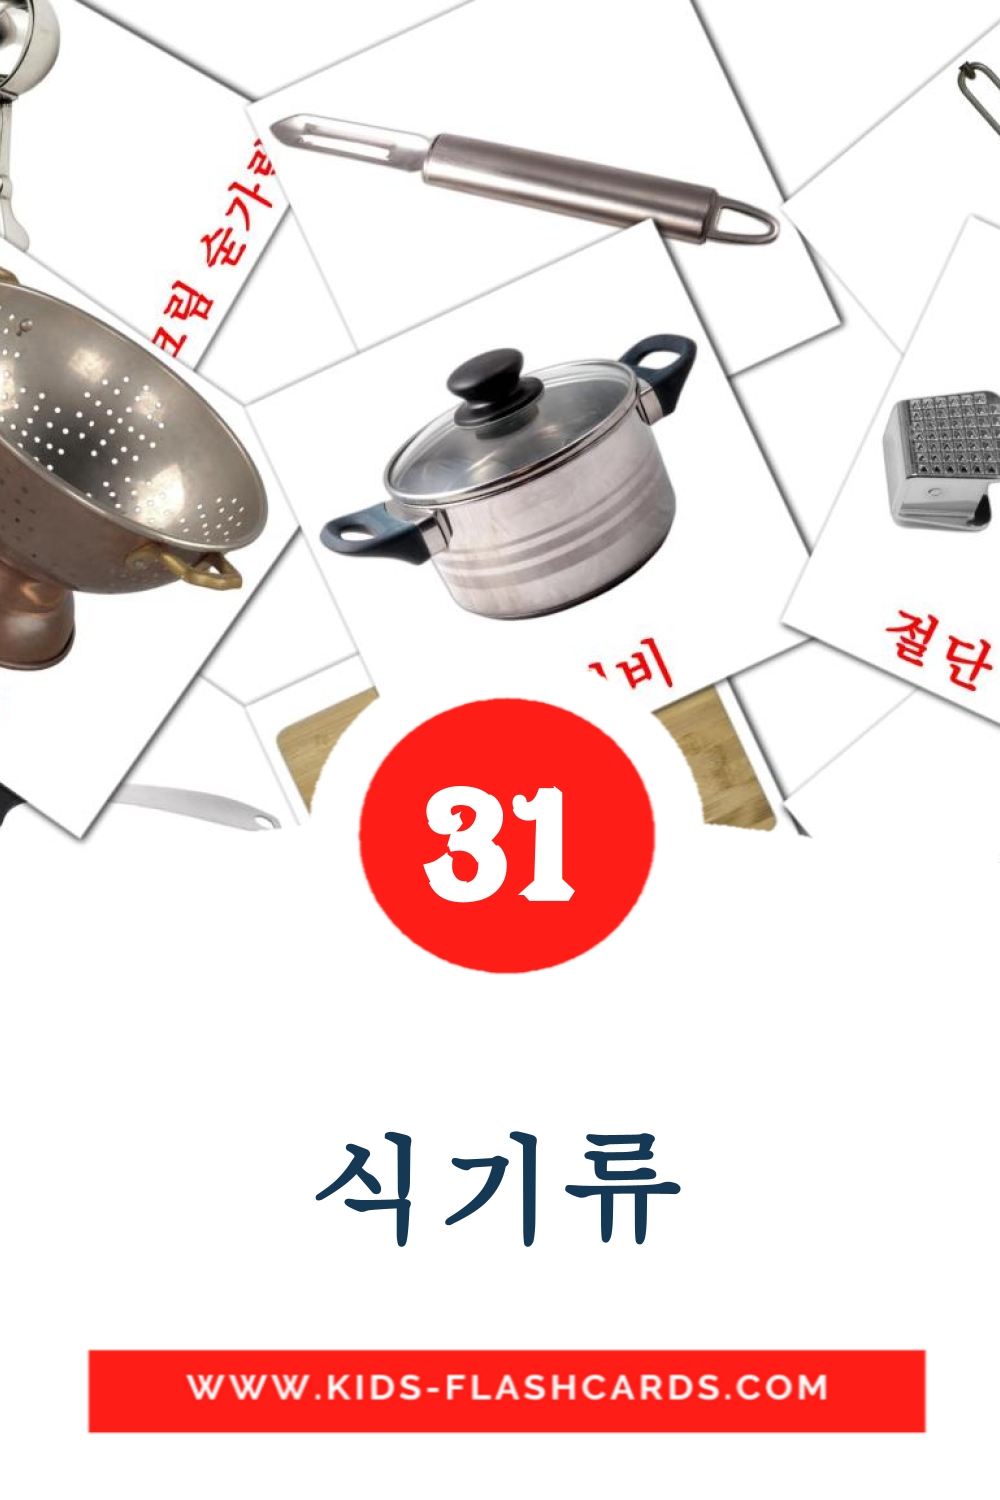 31 carte illustrate di 식기류 per la scuola materna in coreano